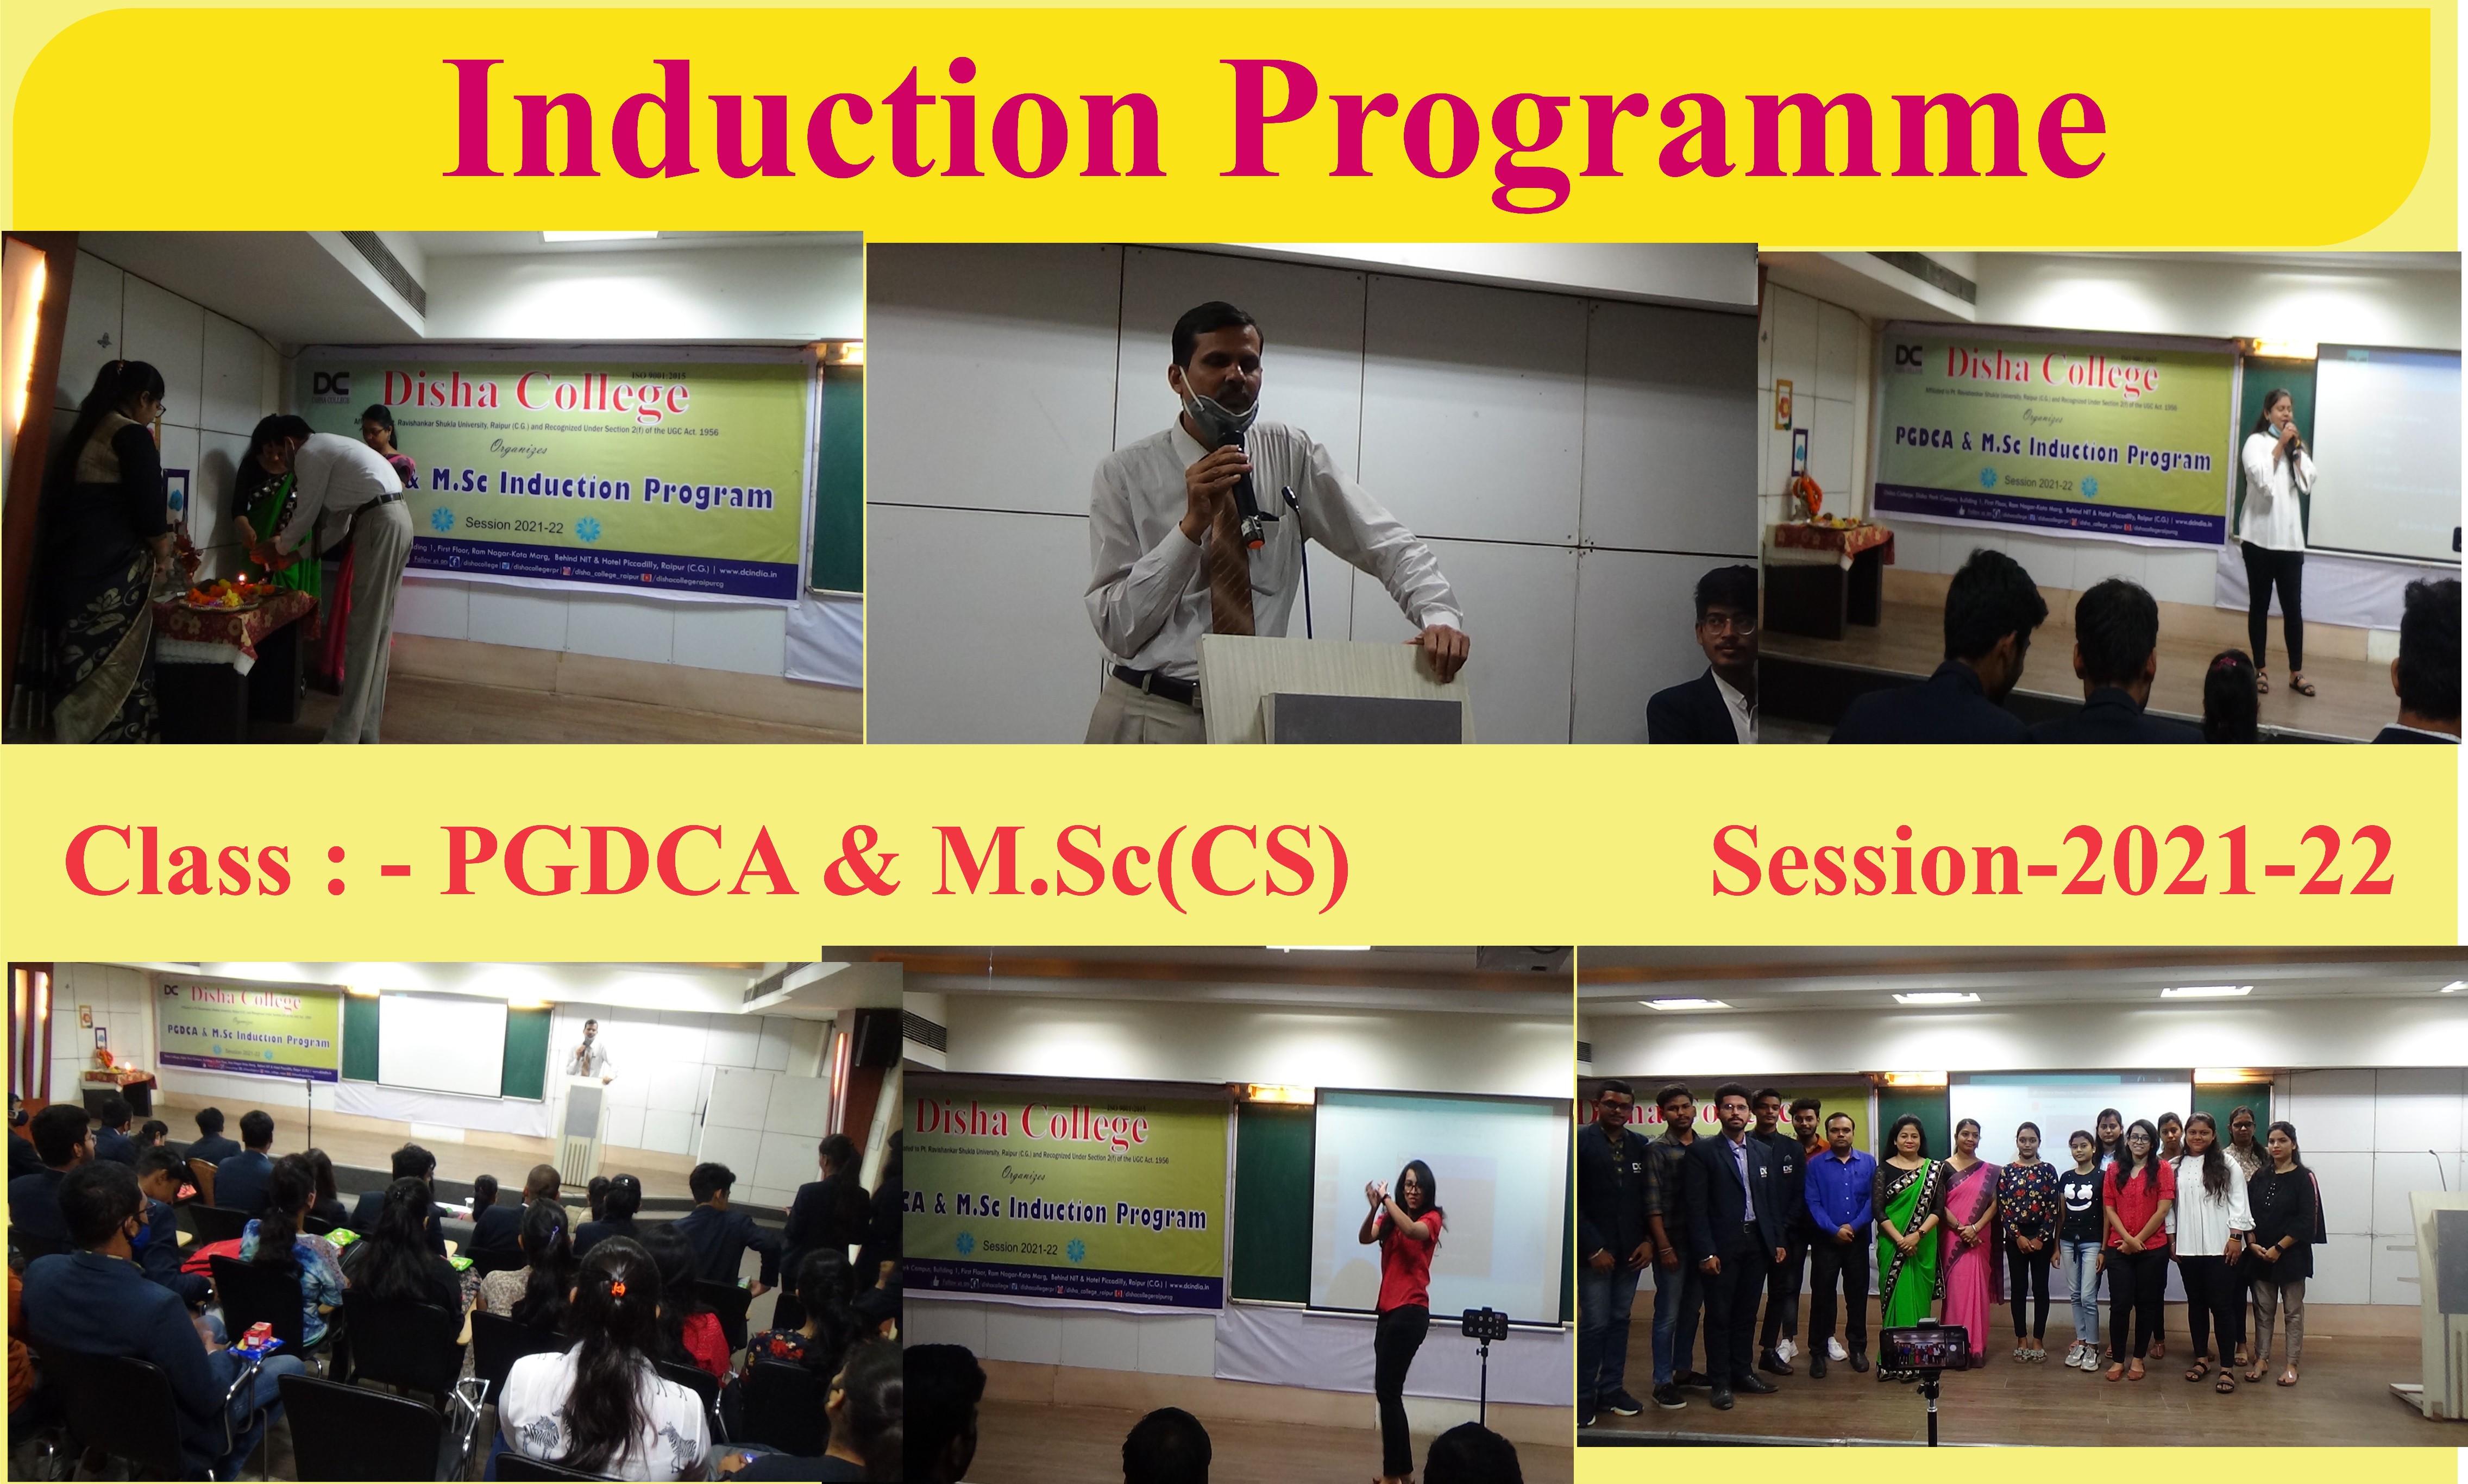 PGDCA & M.Sc.(CS) Induction Programme